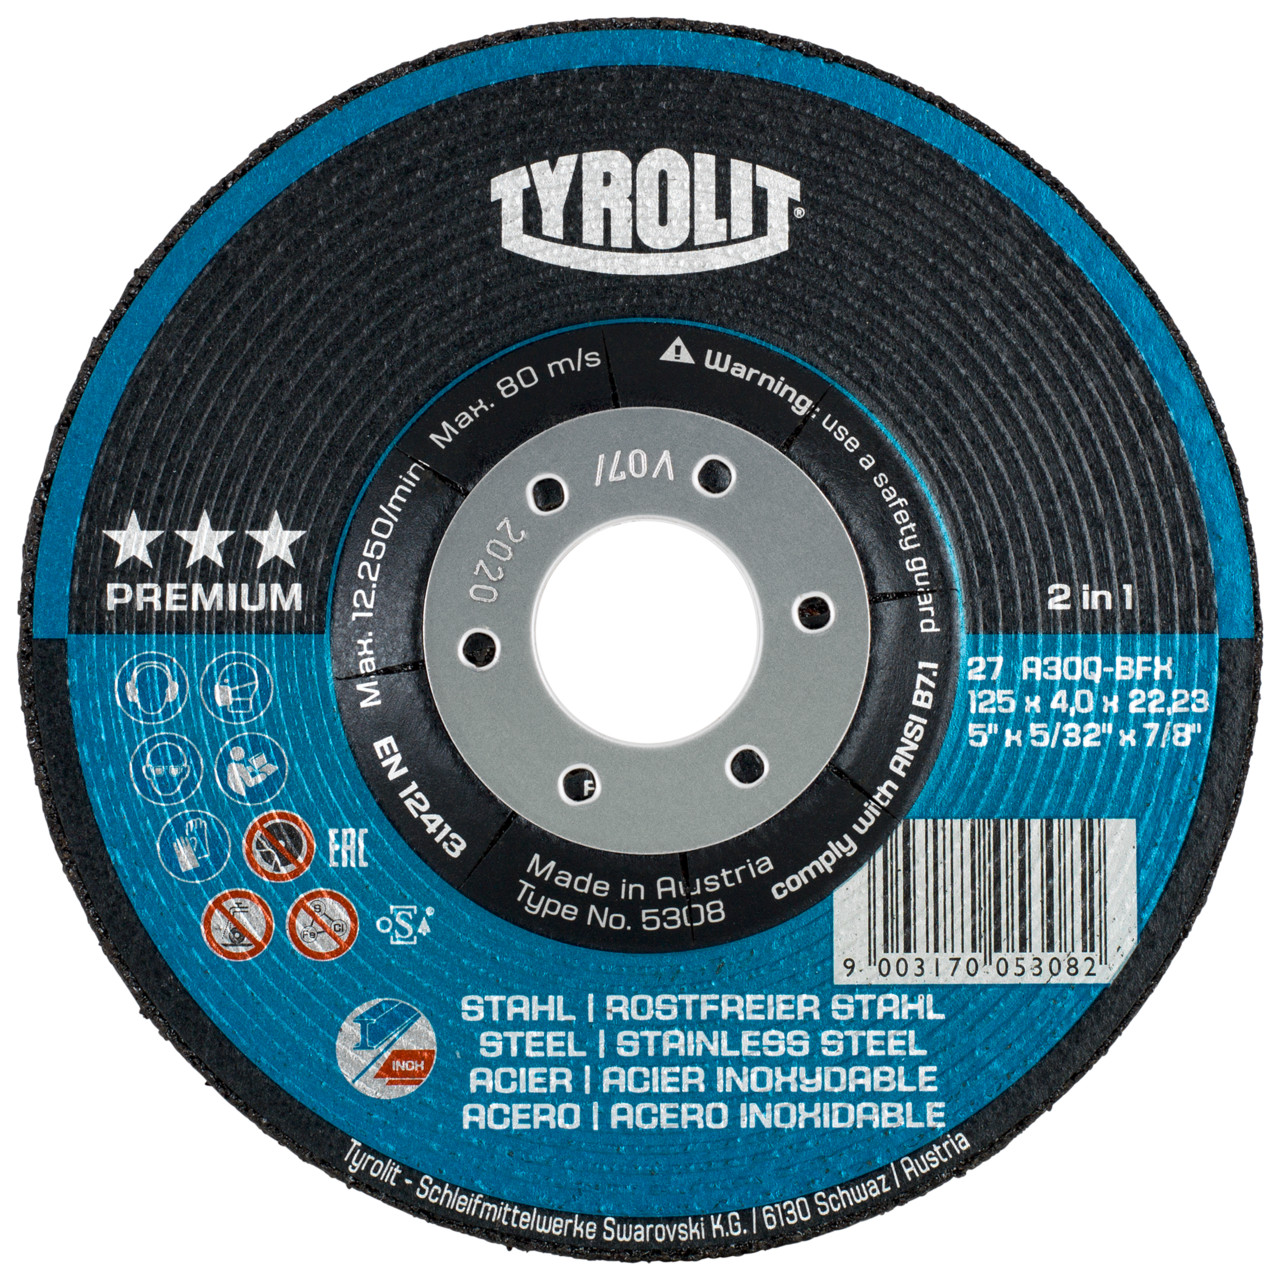 TYROLIT disco de desbaste DxUxH 115x4x22.23 2en1 para acero y acero inoxidable, forma: 27 - versión offset, Art. 5287